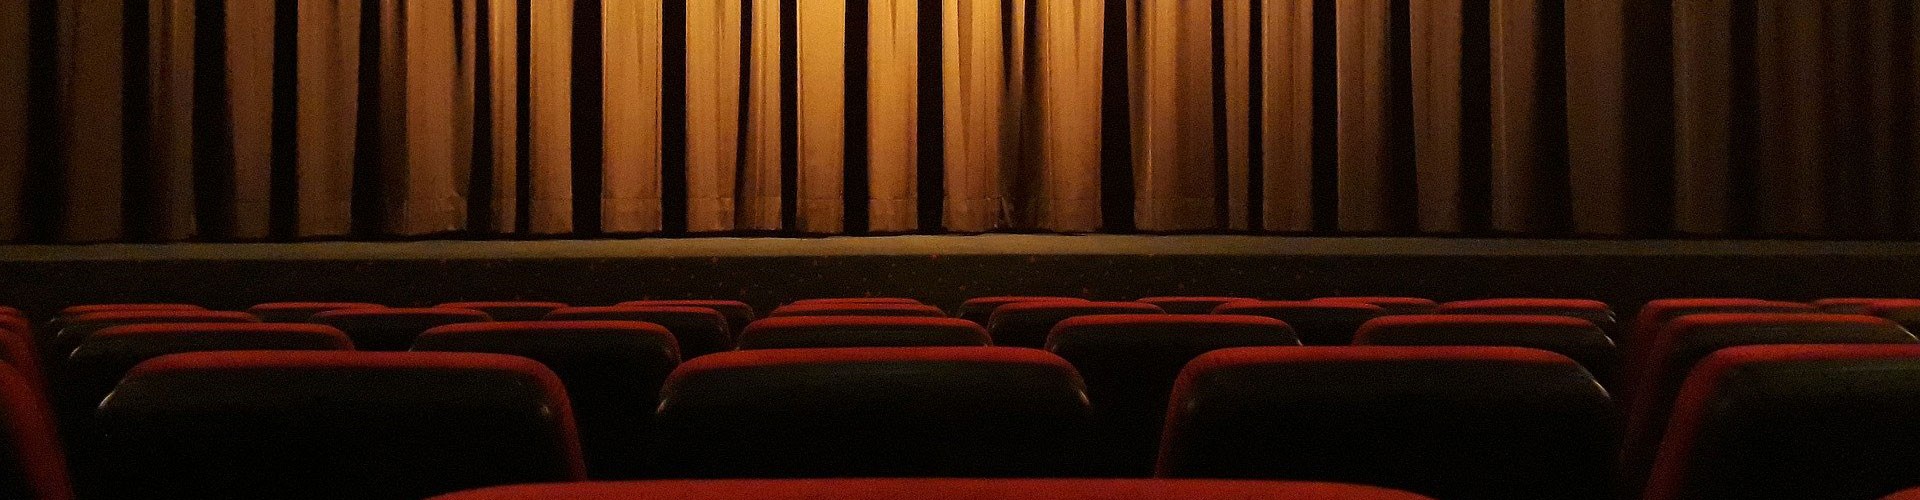 closed theatre curtain in empty theatre